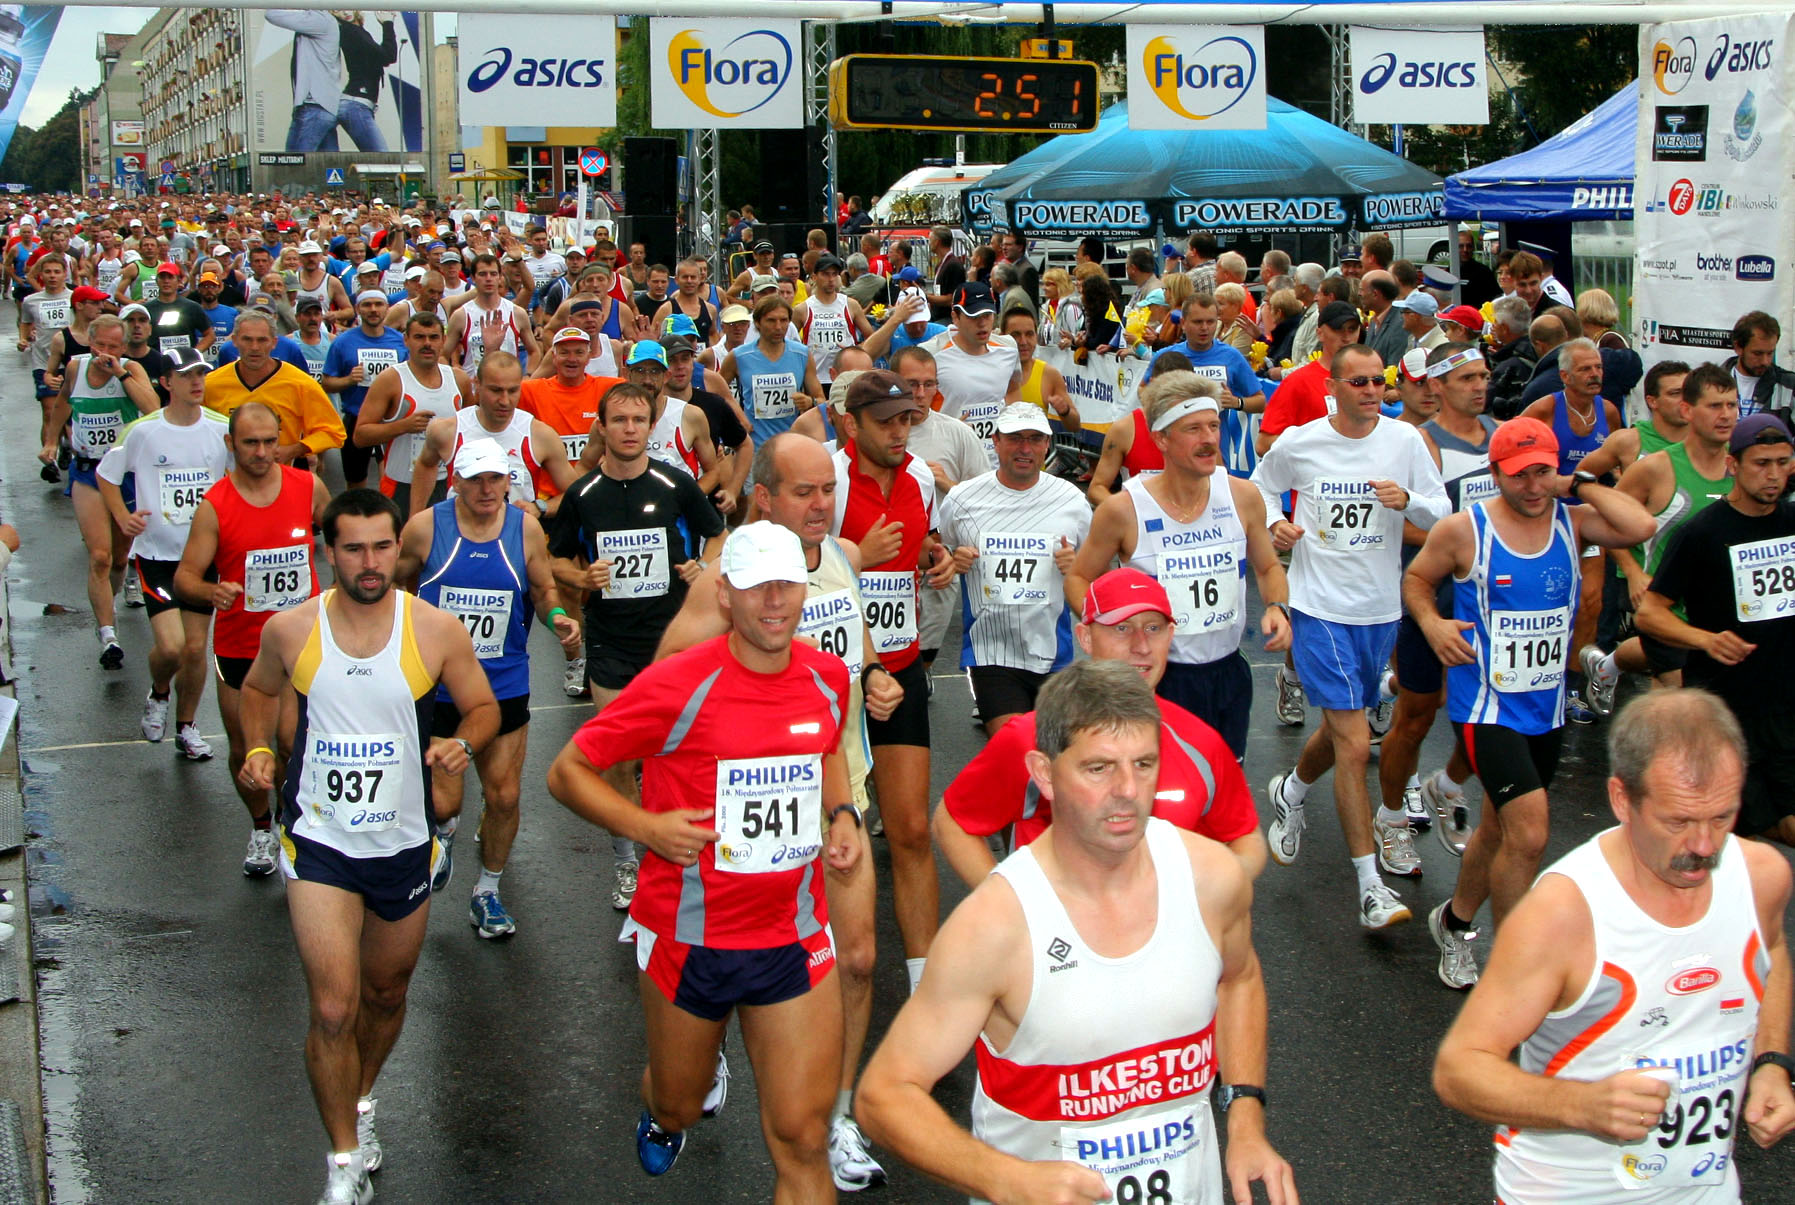 maratony24.pl